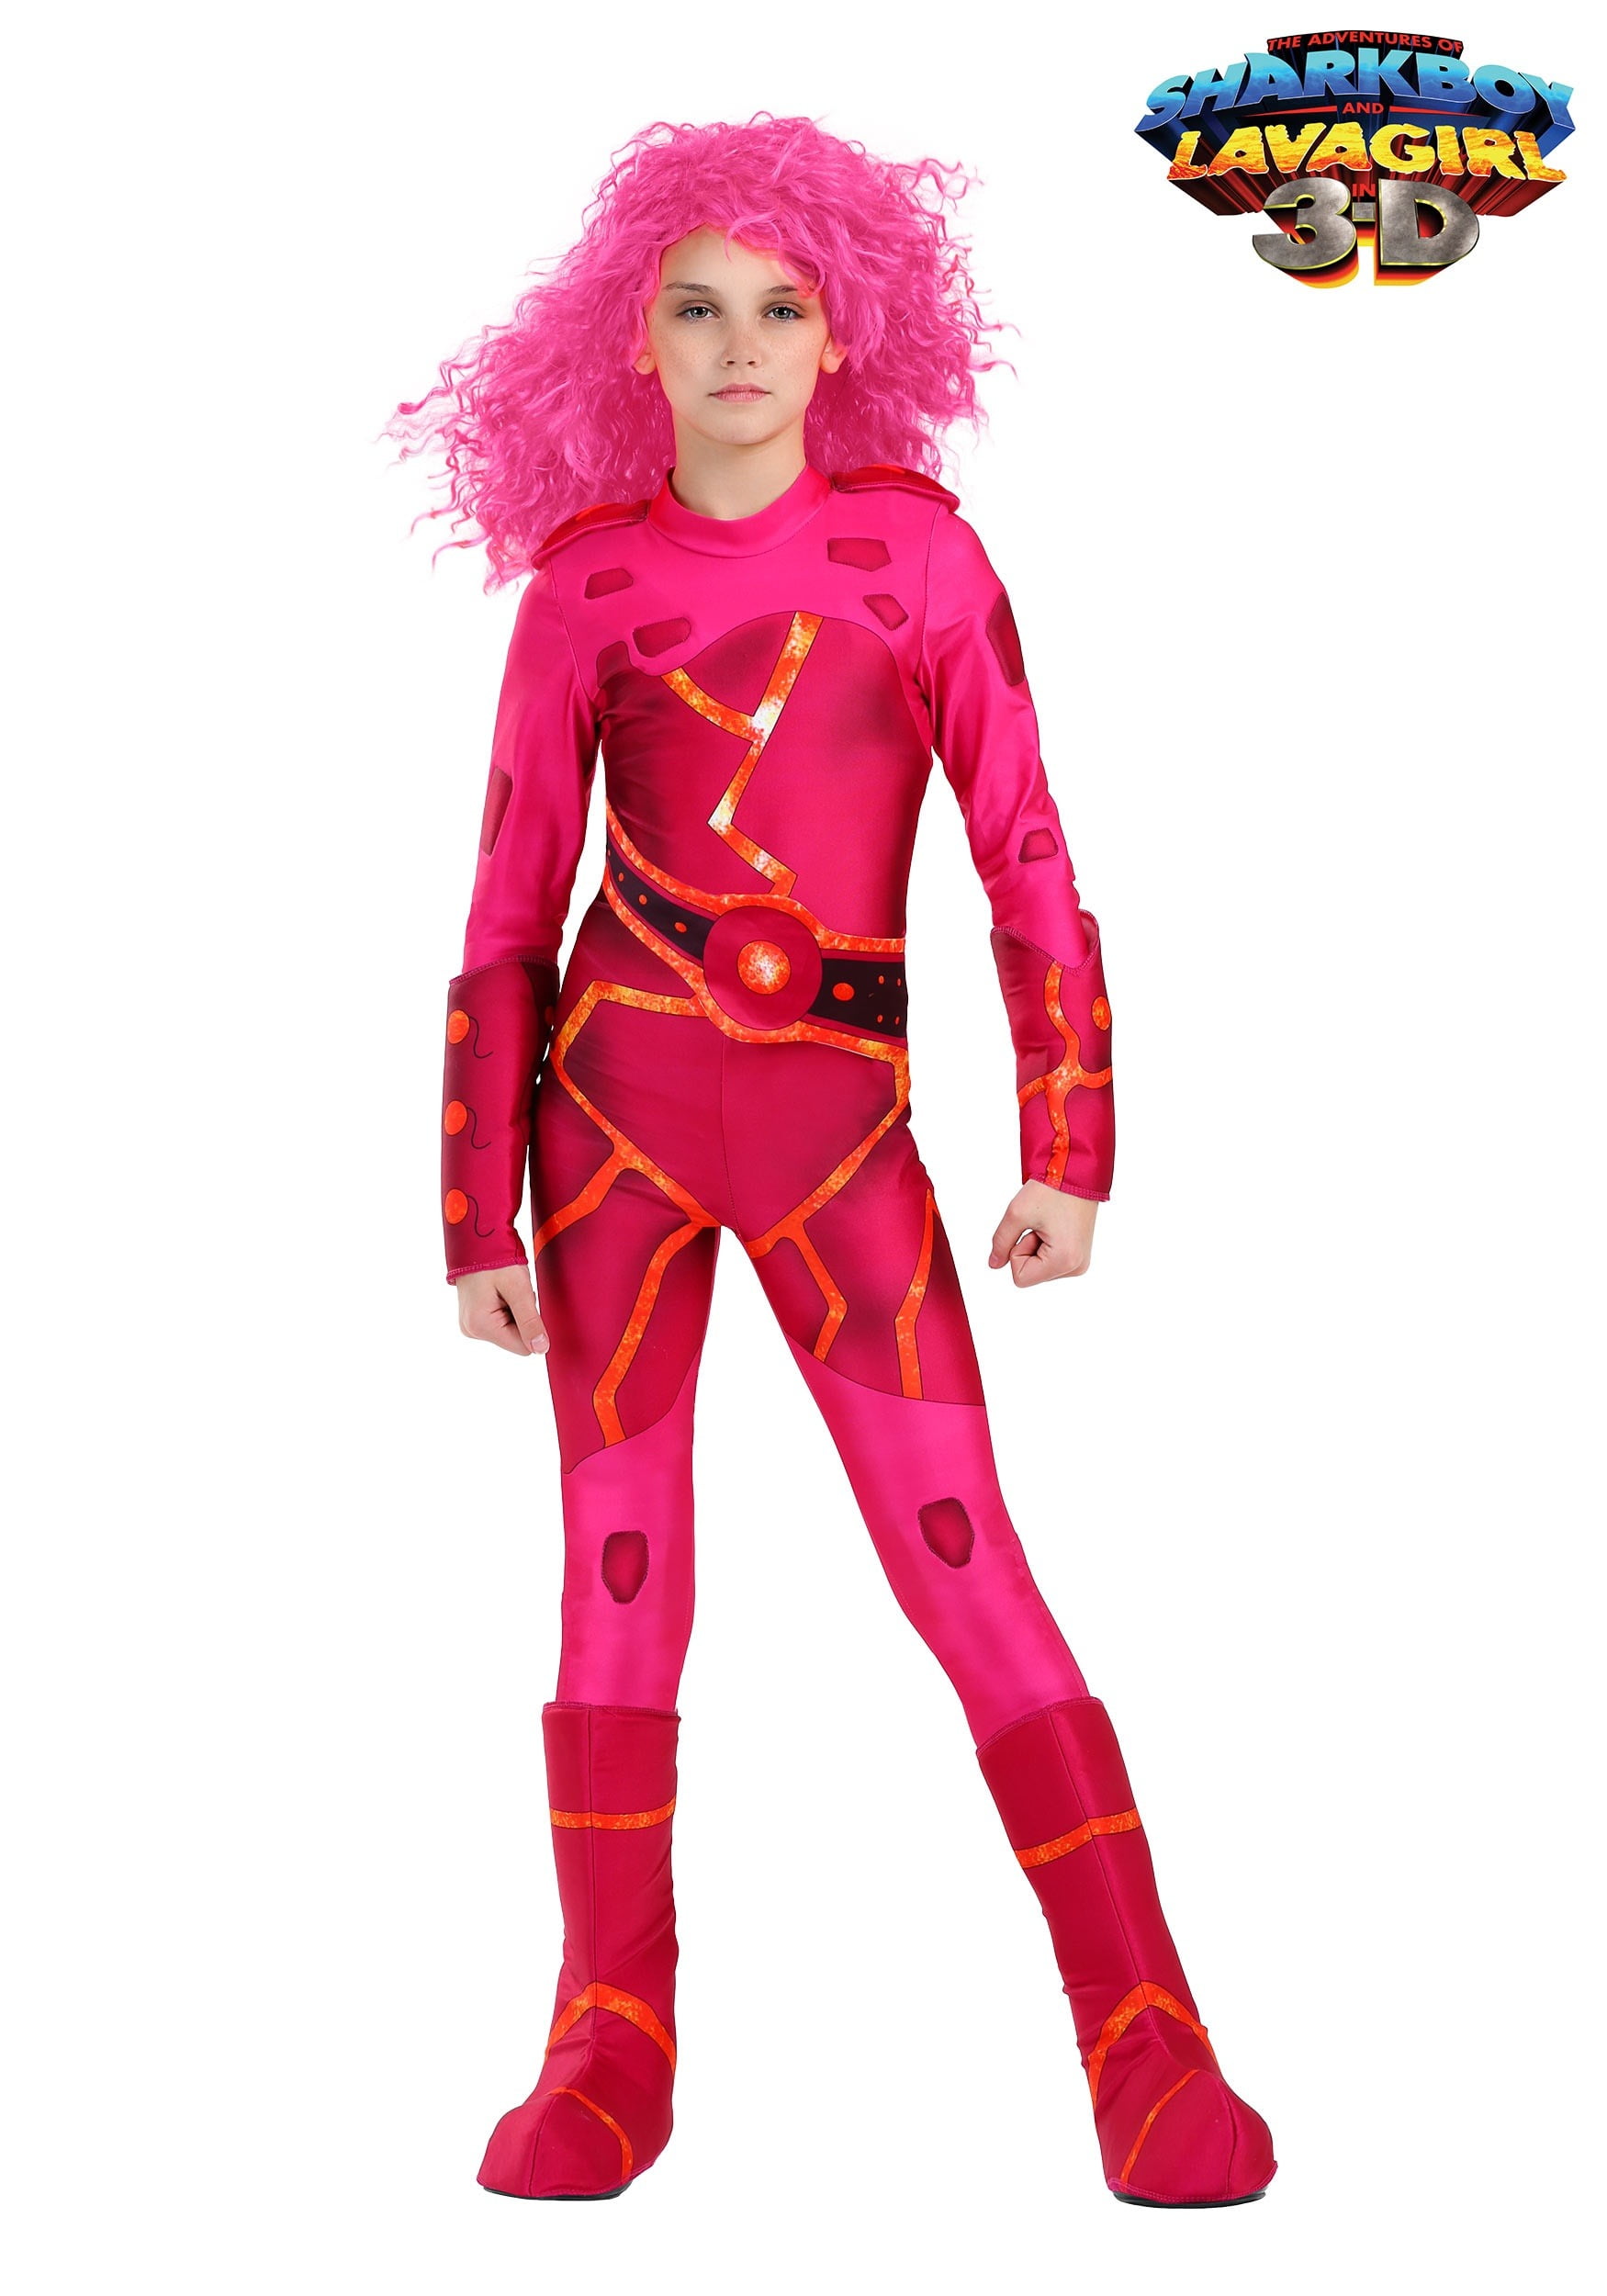 Lavagirl Costume Walmart.com